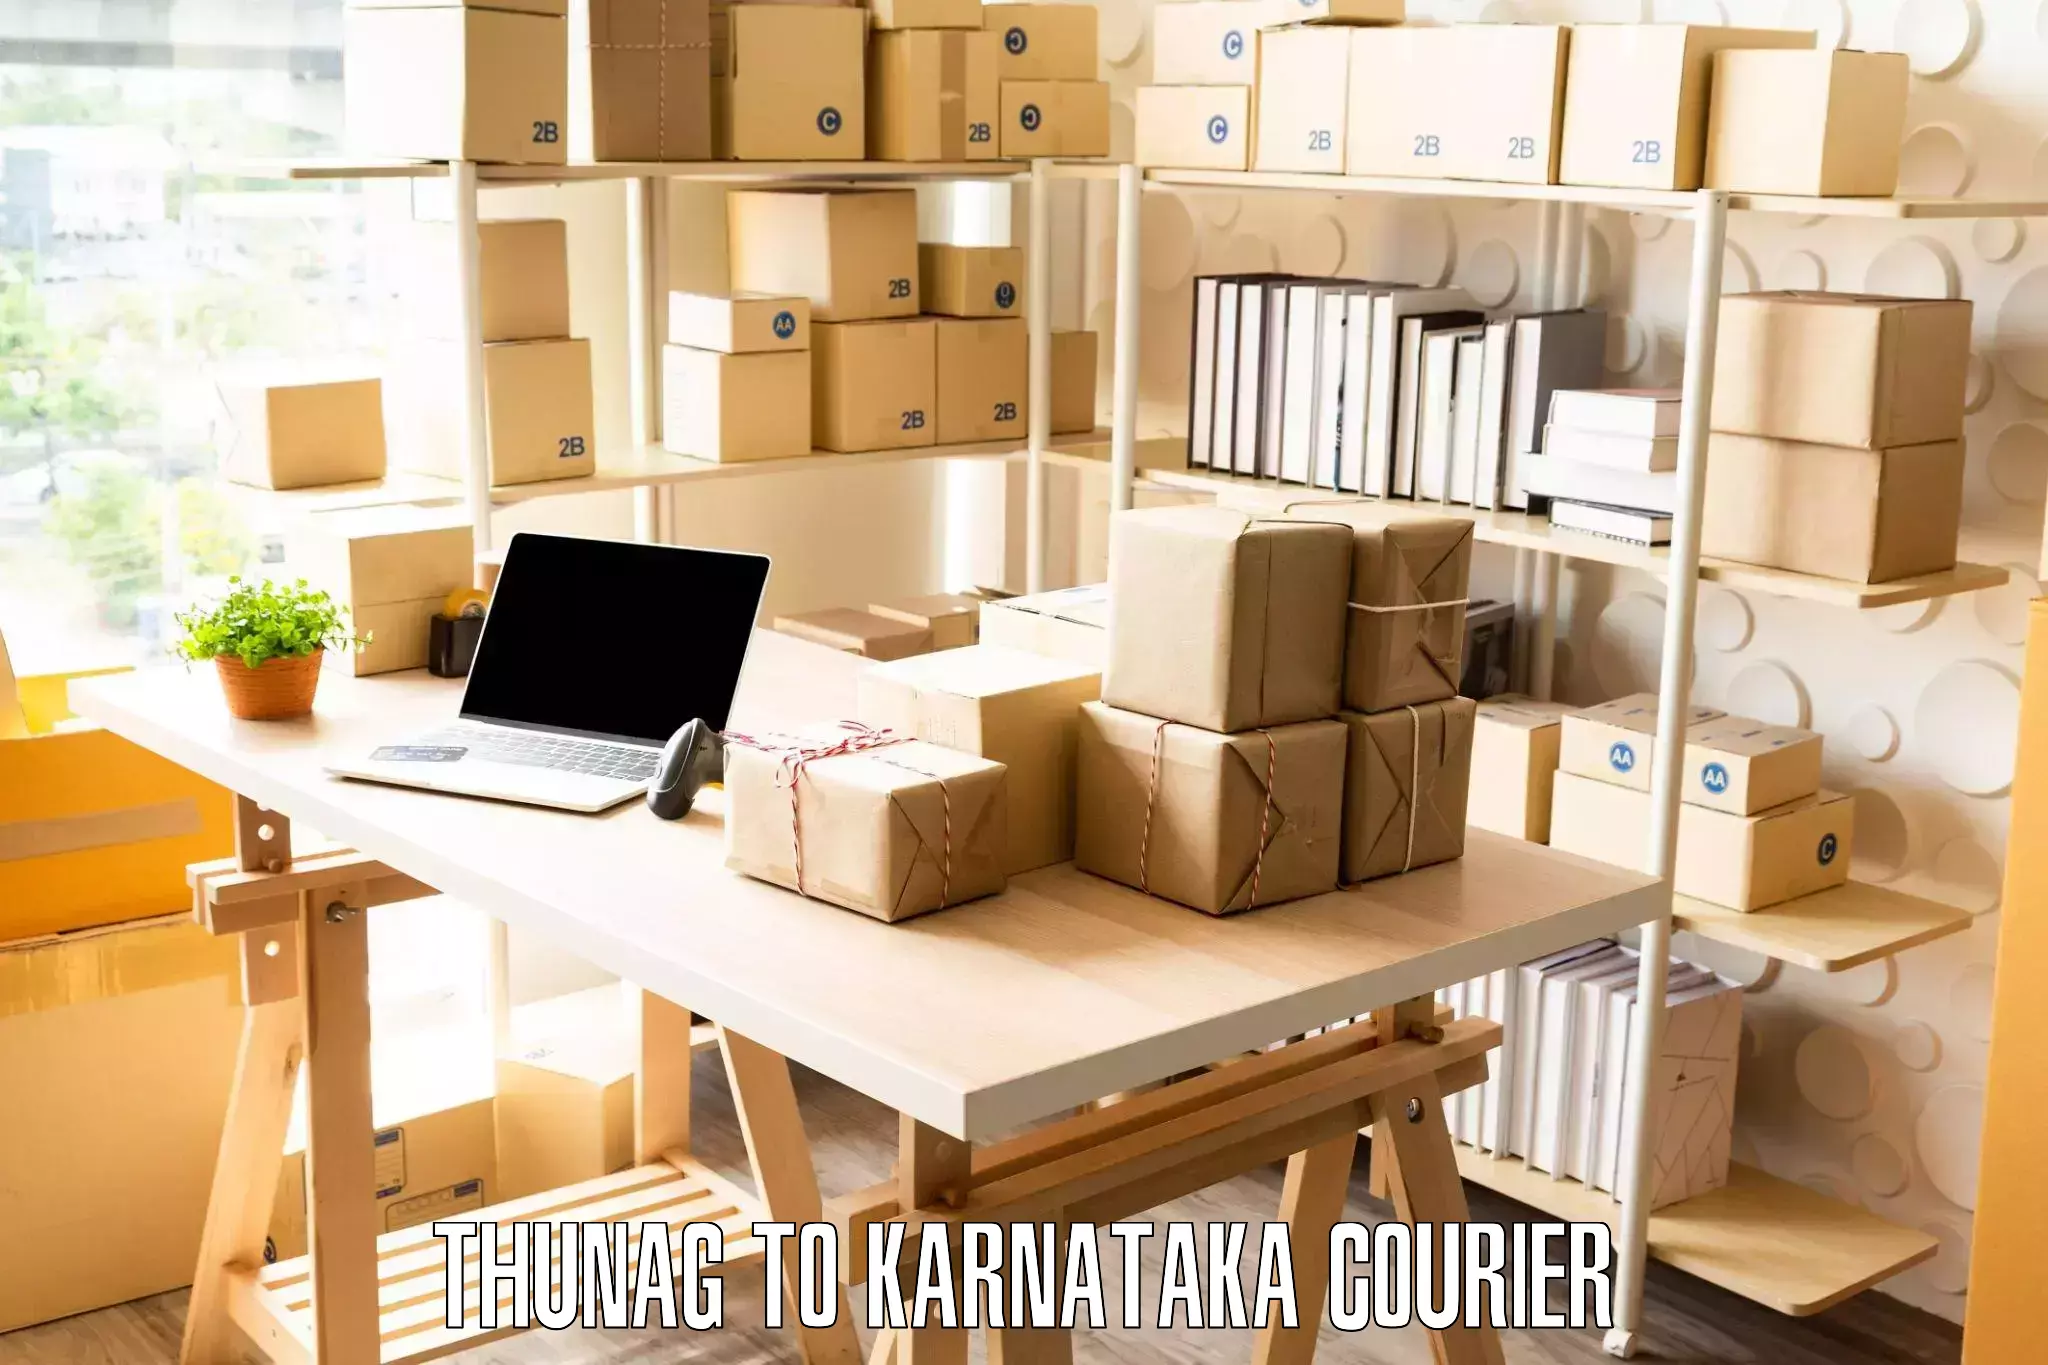 Affordable moving services Thunag to Karnataka